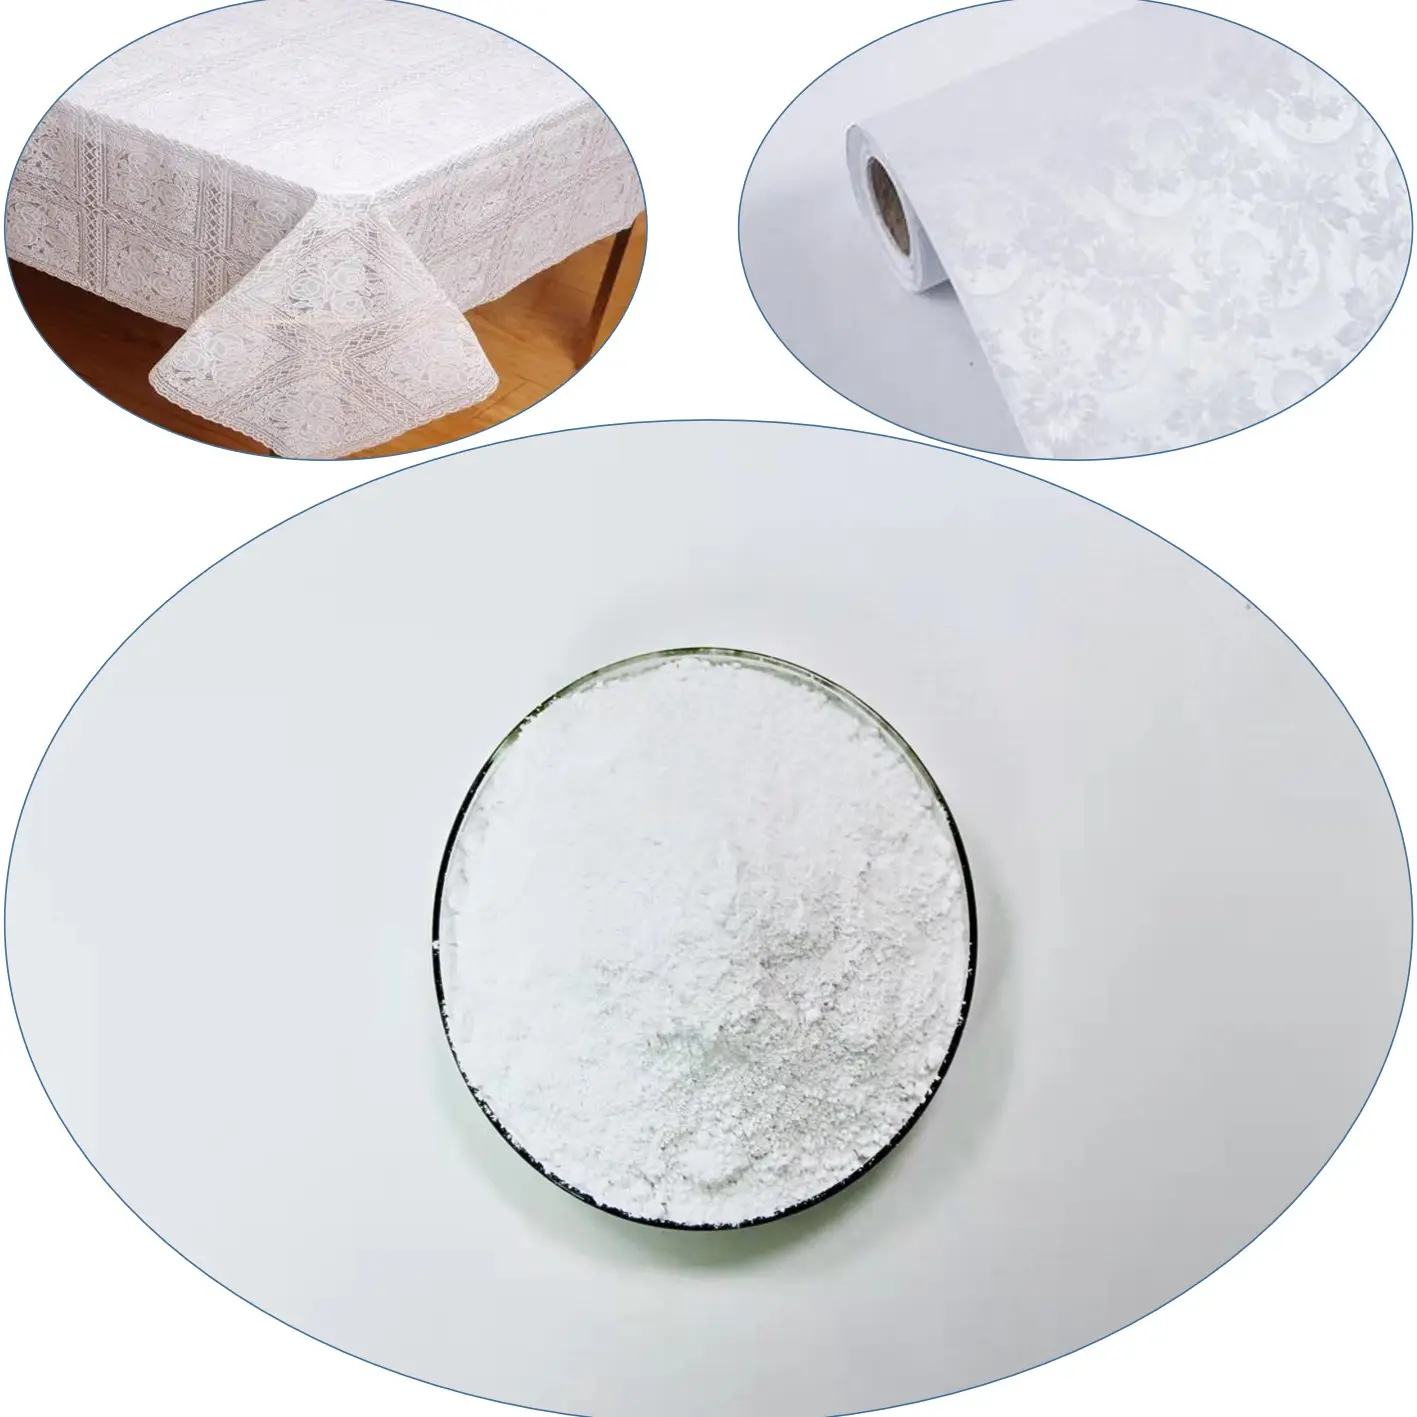 عامل مساعد كيميائي يُستخدم مثبتات الكالسيوم والزنك مع الاستقرار الحراري الجيد على نطاق واسع في منتجات مفرش المائدة.